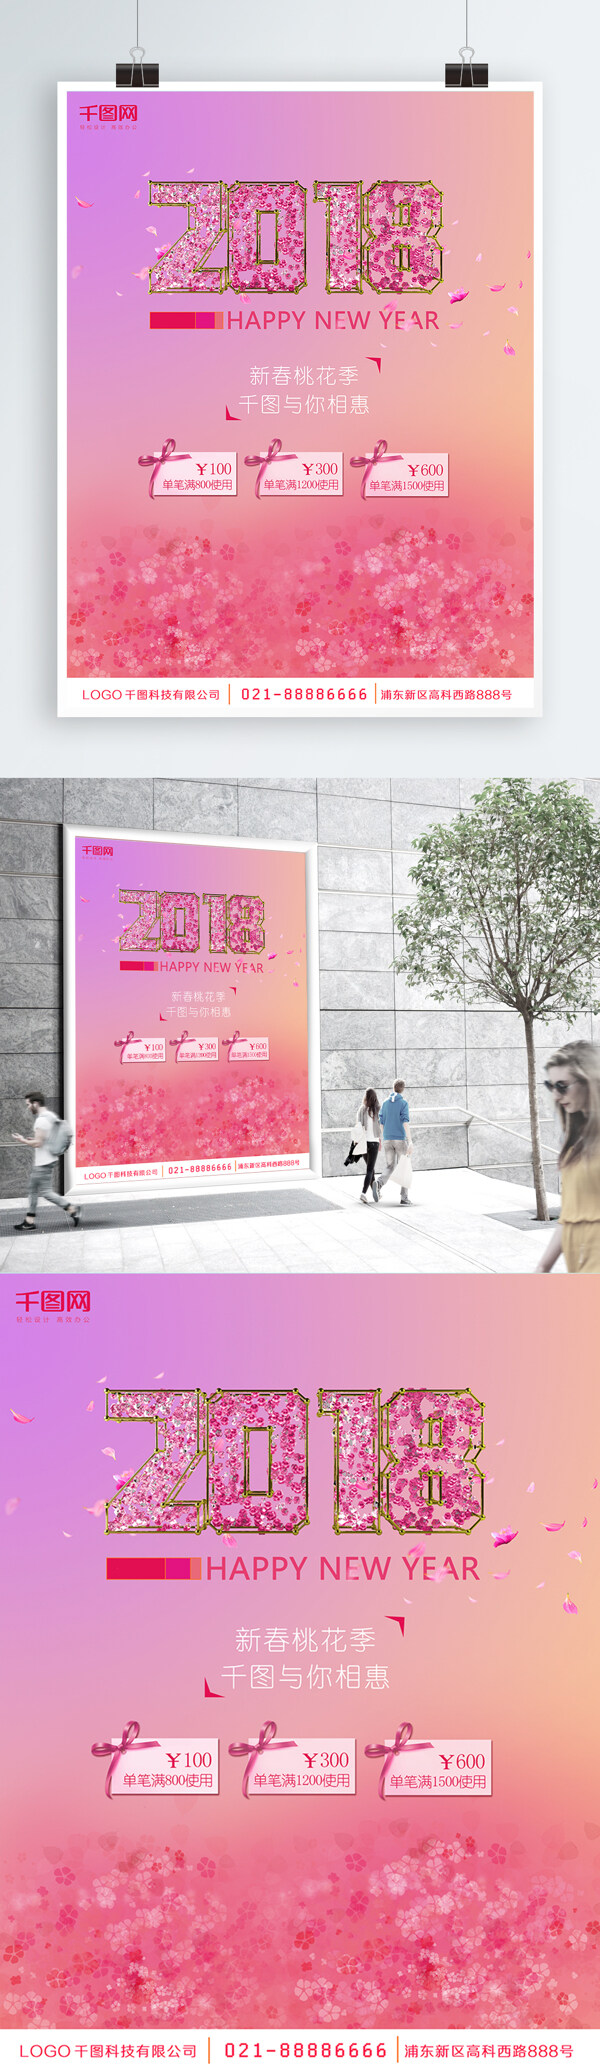 2018新春促销新年海报